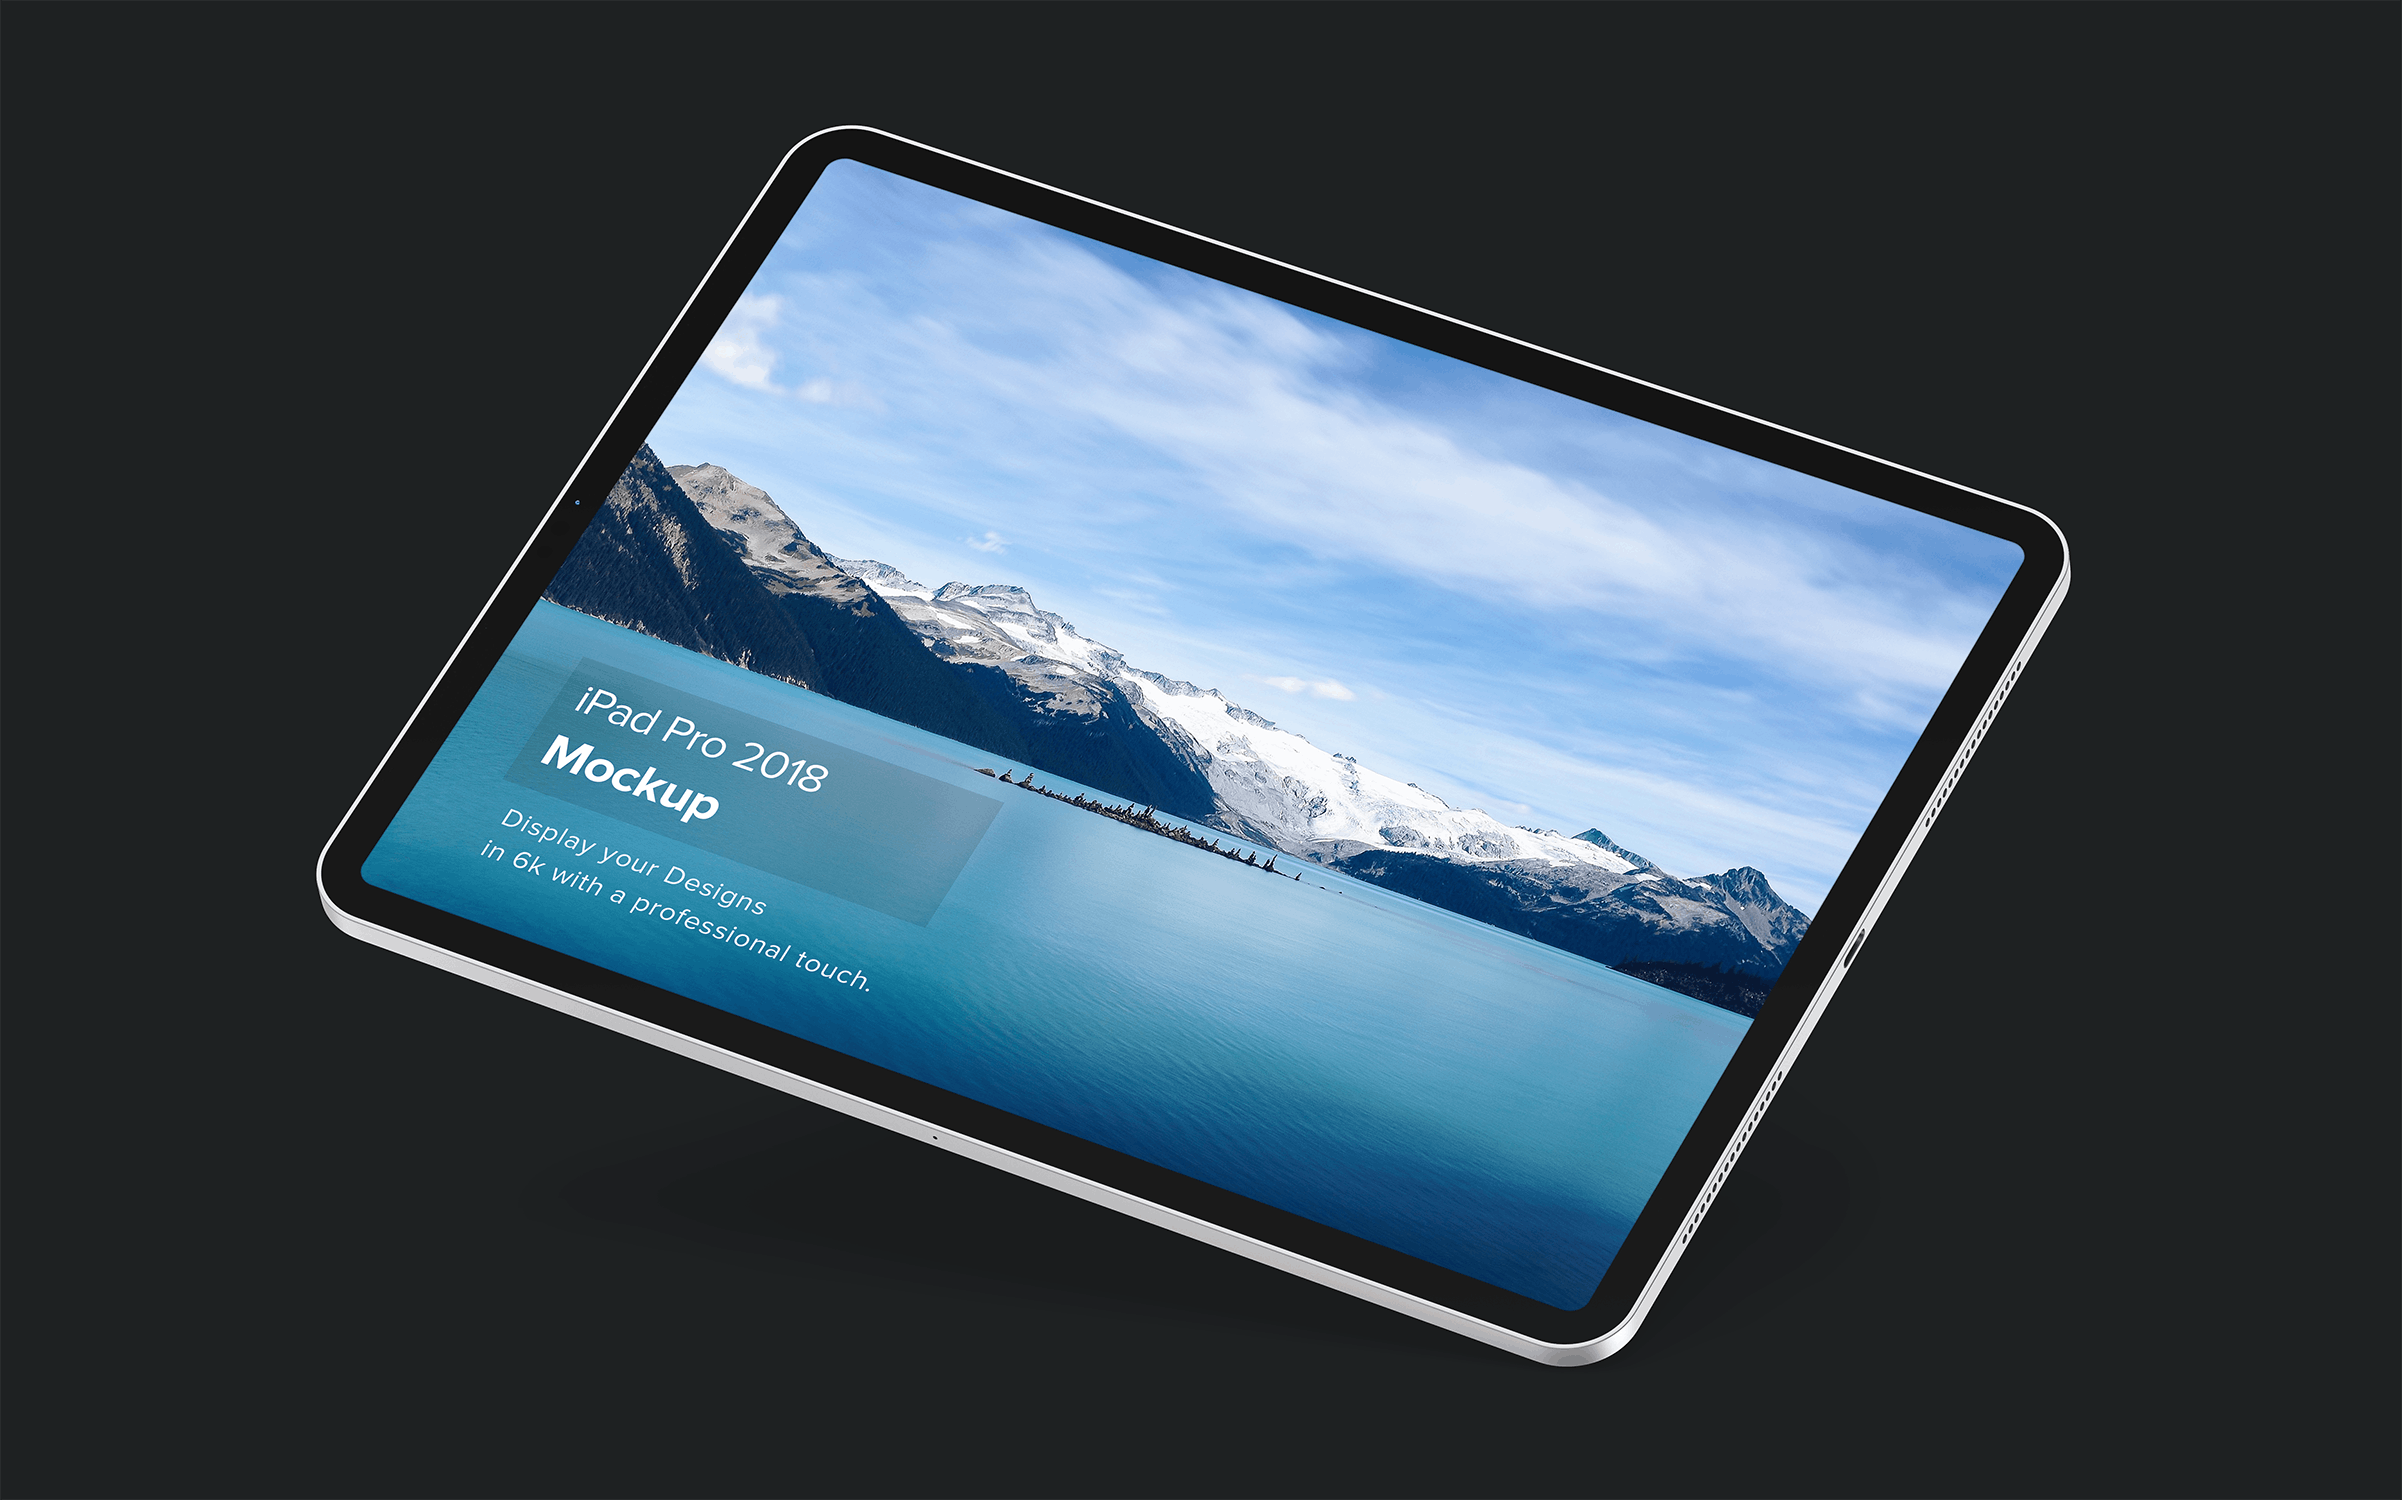 iPad Pro专业平板电脑设计演示非凡图库精选样机模板套装v2 iPad Mockup 2.0插图(6)